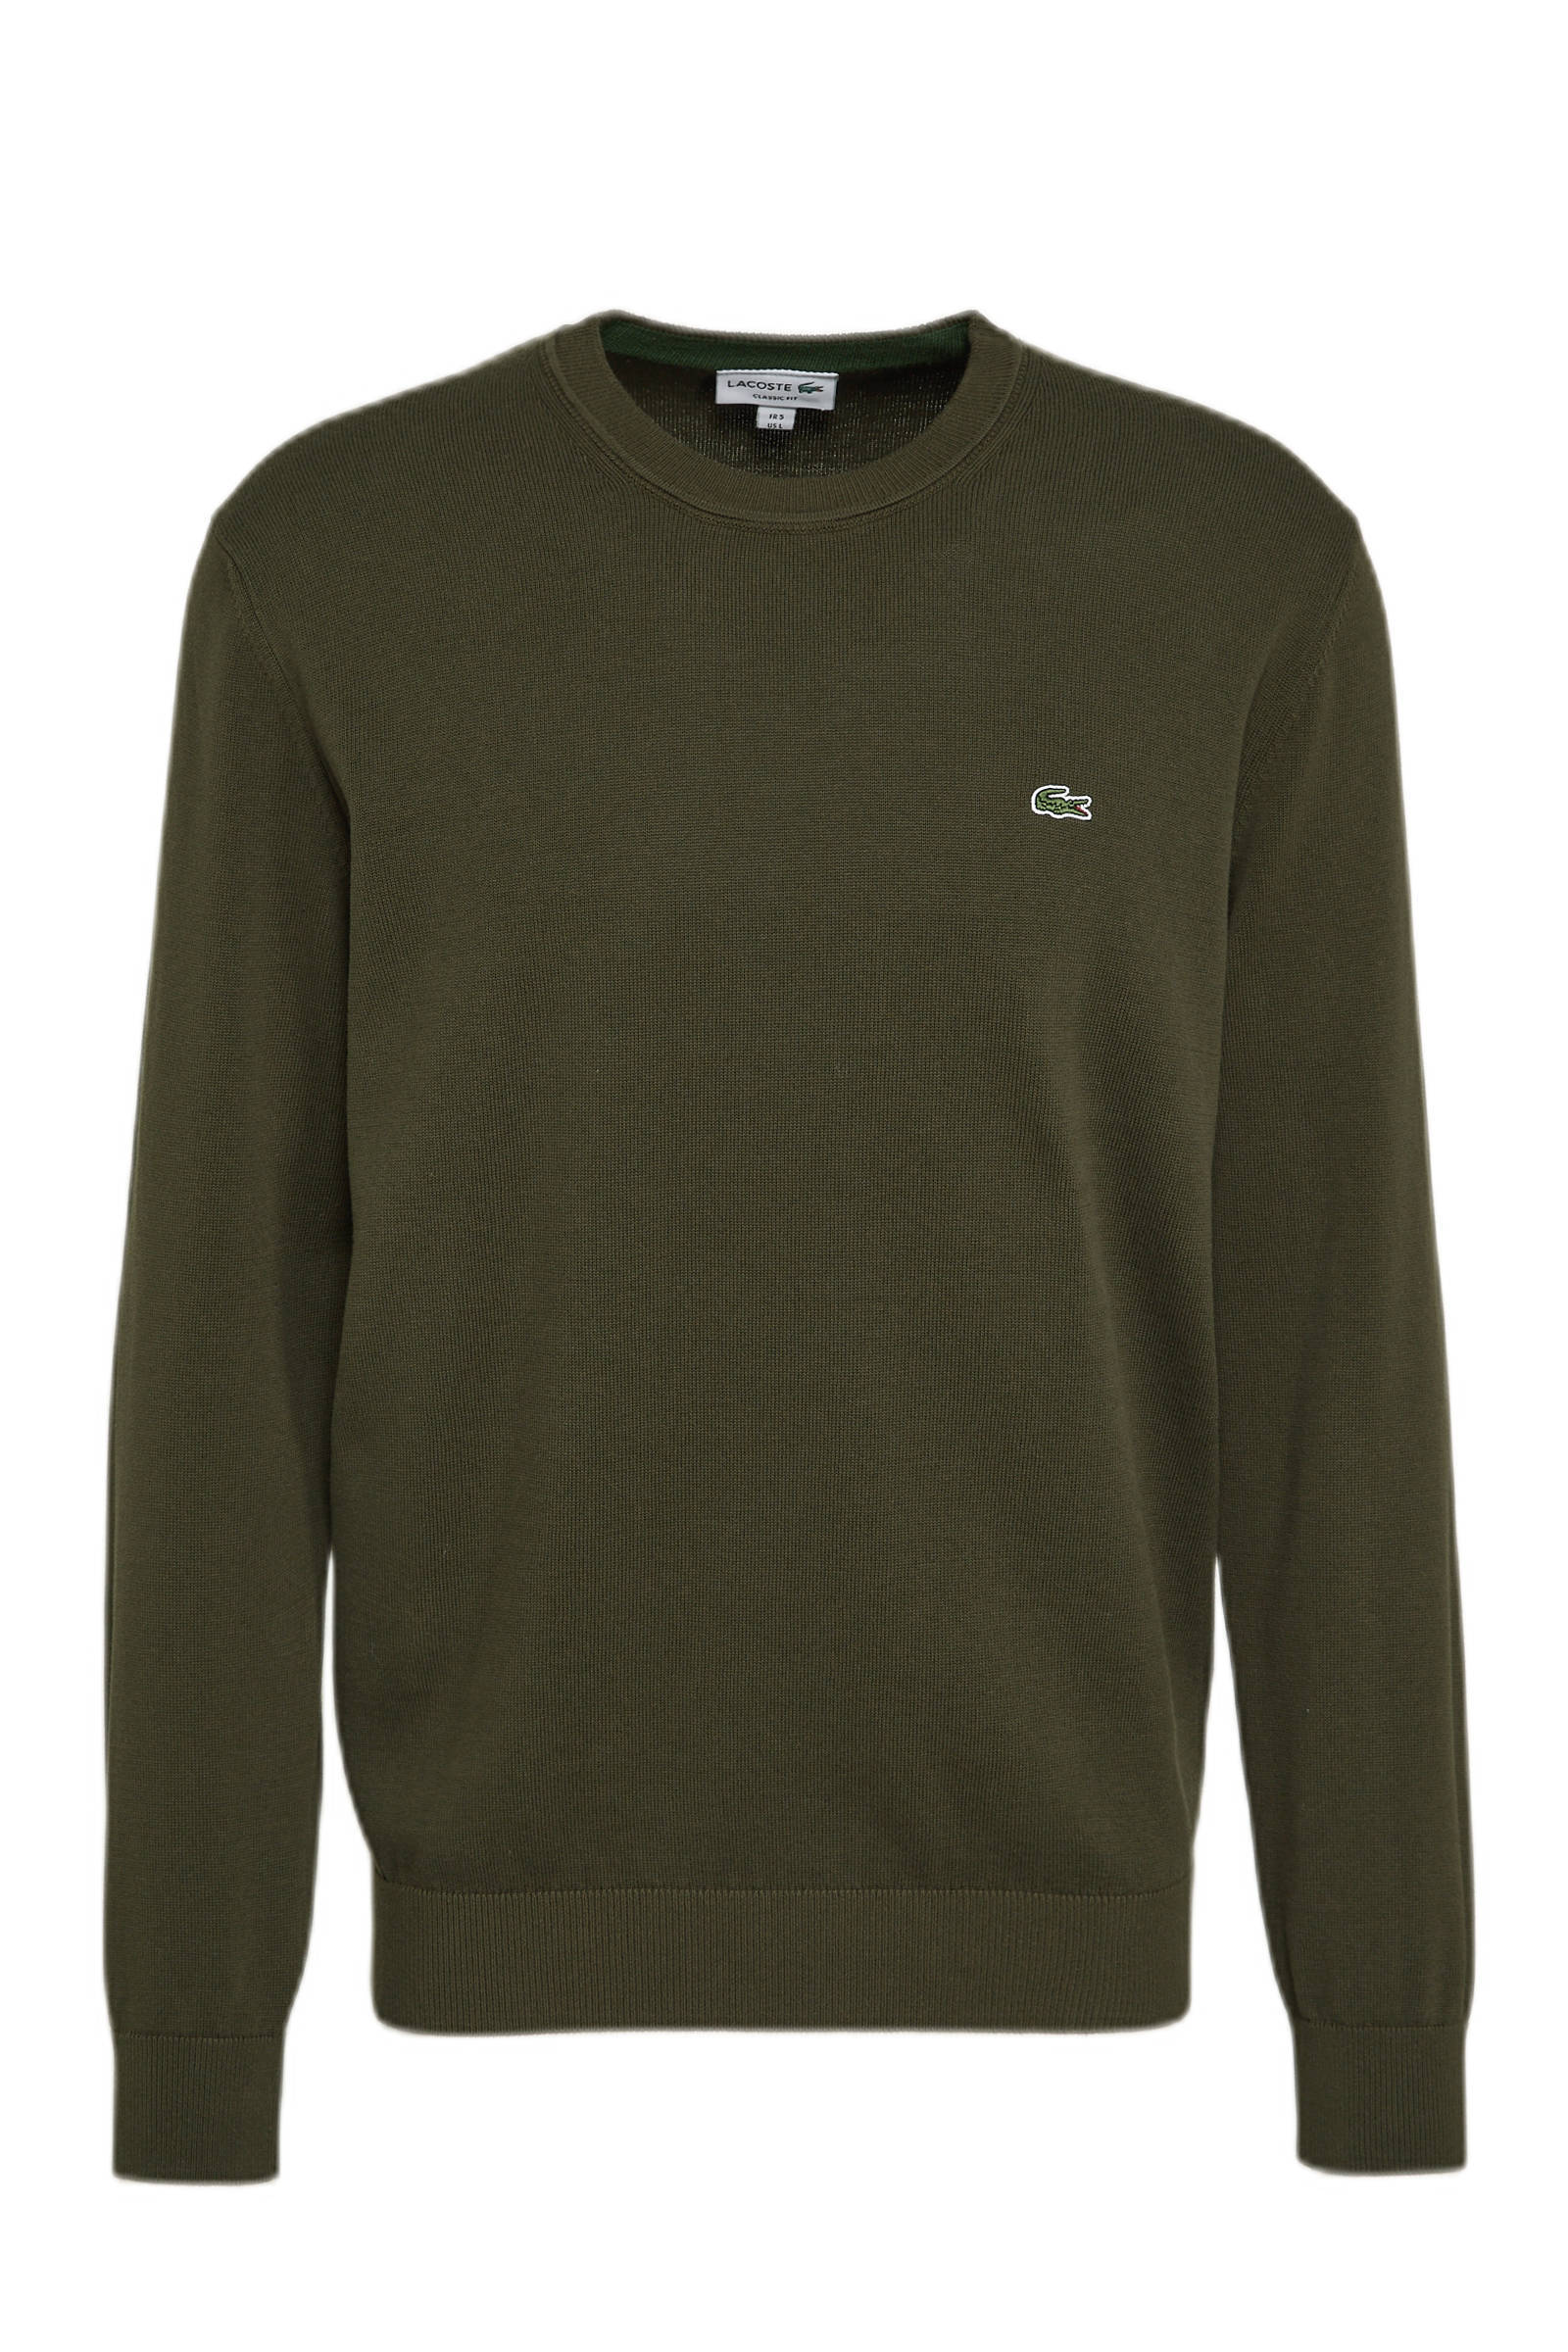 Lacoste Round neck knitwear classic fit khaki green online kopen